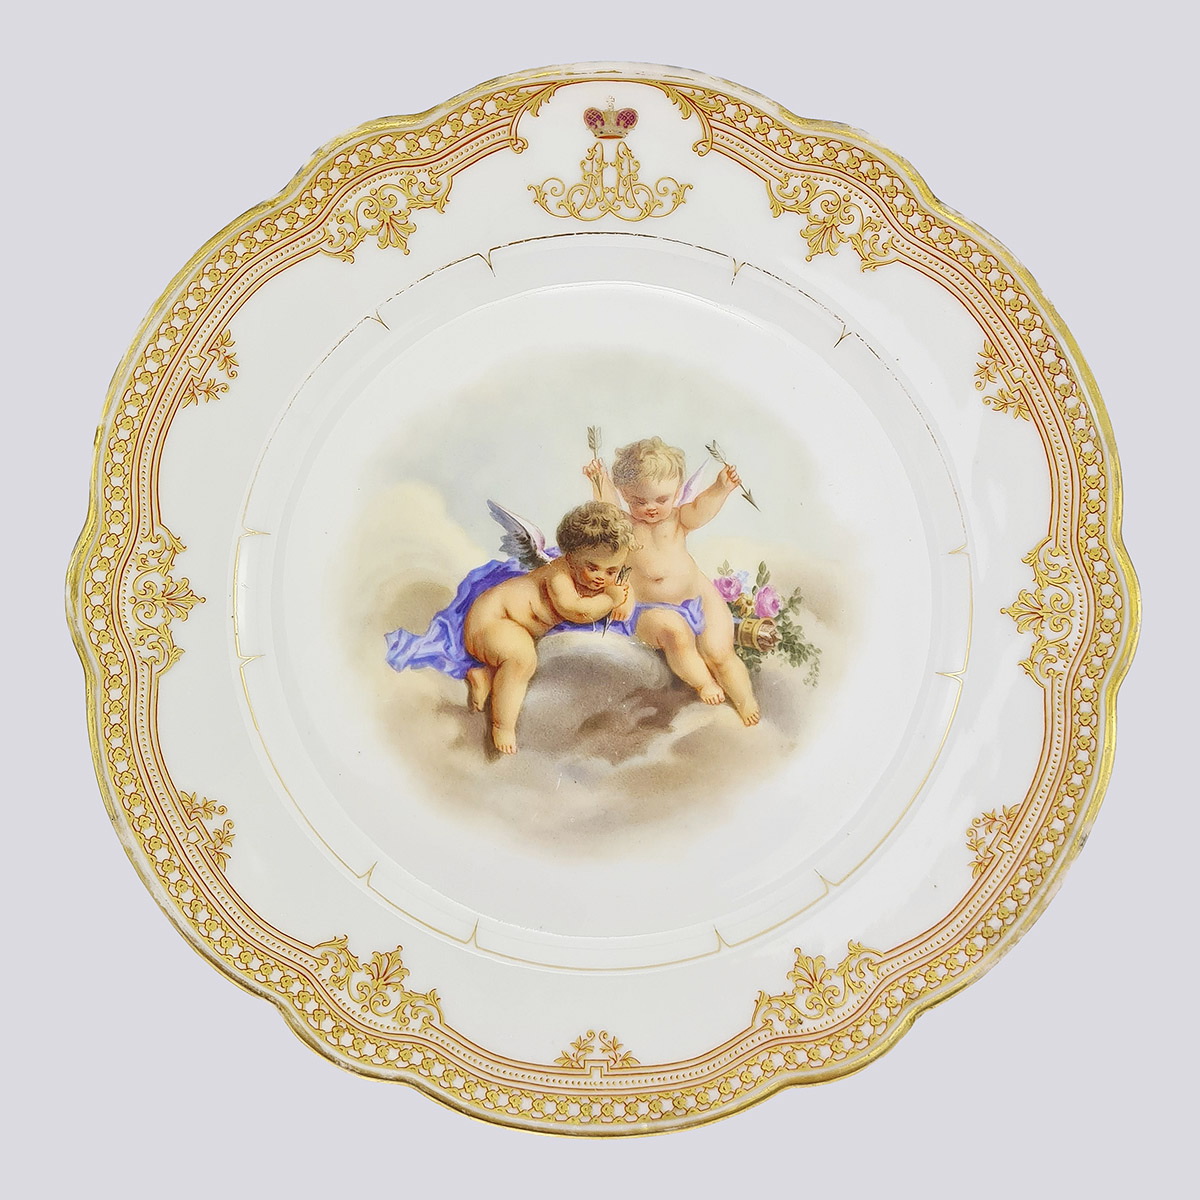 Тарелка «Играющие Путти» из фарфора 19 век (ИФЗ А II, Российская Империя)